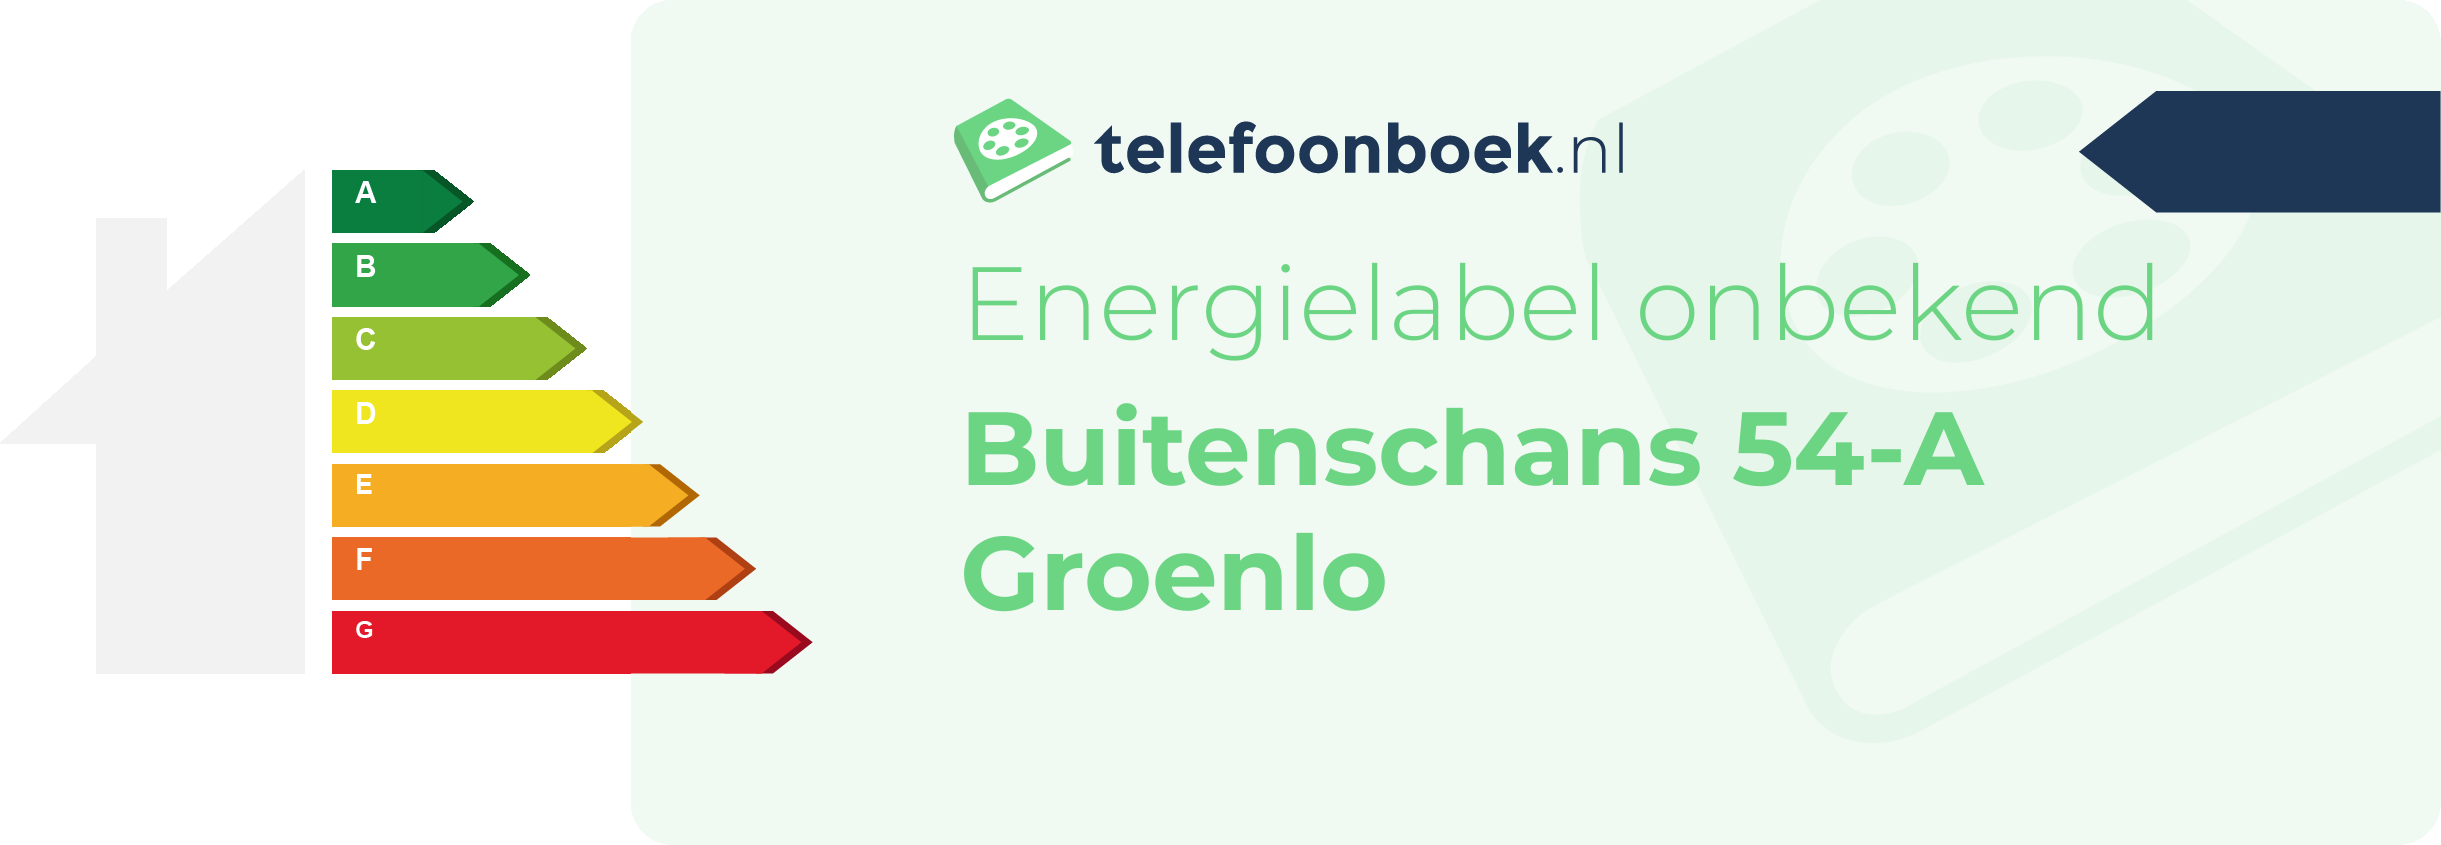 Energielabel Buitenschans 54-A Groenlo